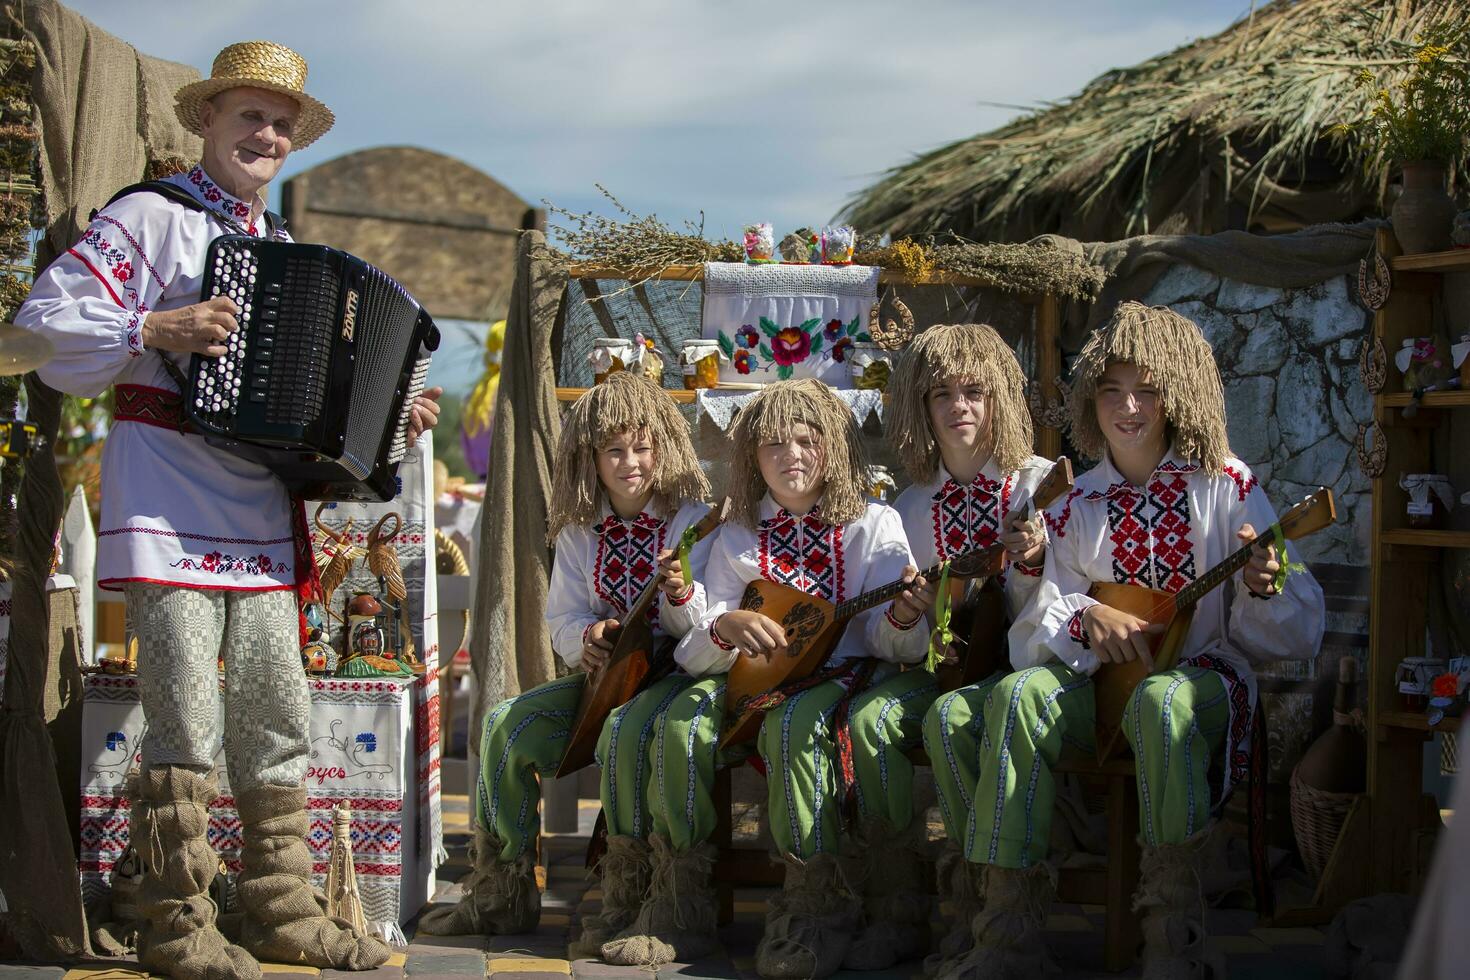 08 29 2020 Weißrussland, lyaskovichi. Feier im das Stadt. ethnisch slawisch ukrainisch oder Belarussisch Musiker mit Balalaikas. foto